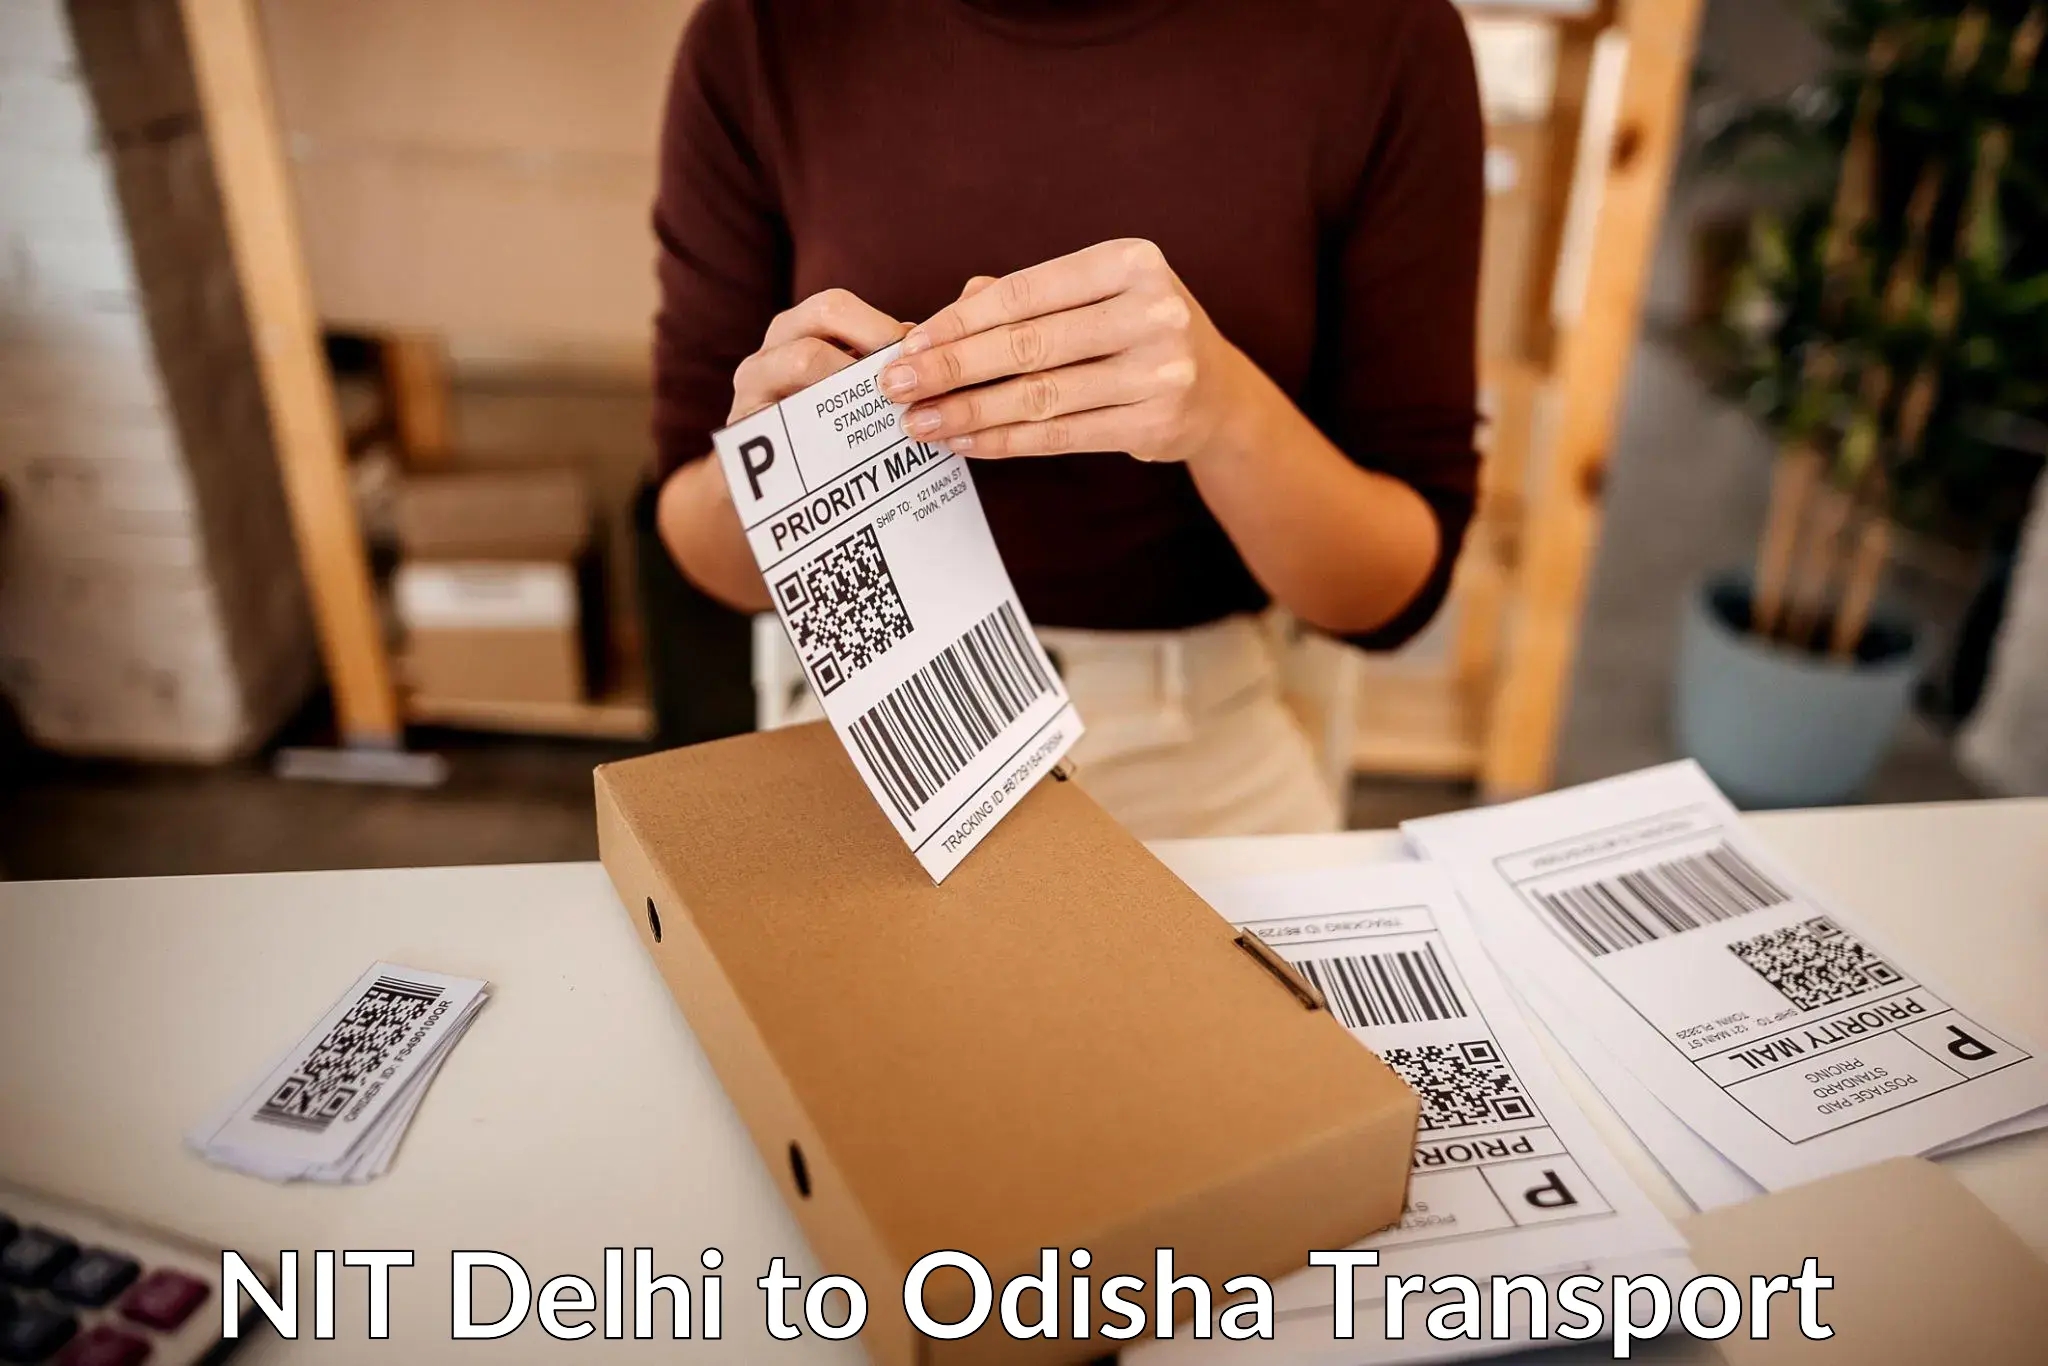 Cargo transportation services NIT Delhi to Parlakhemundi